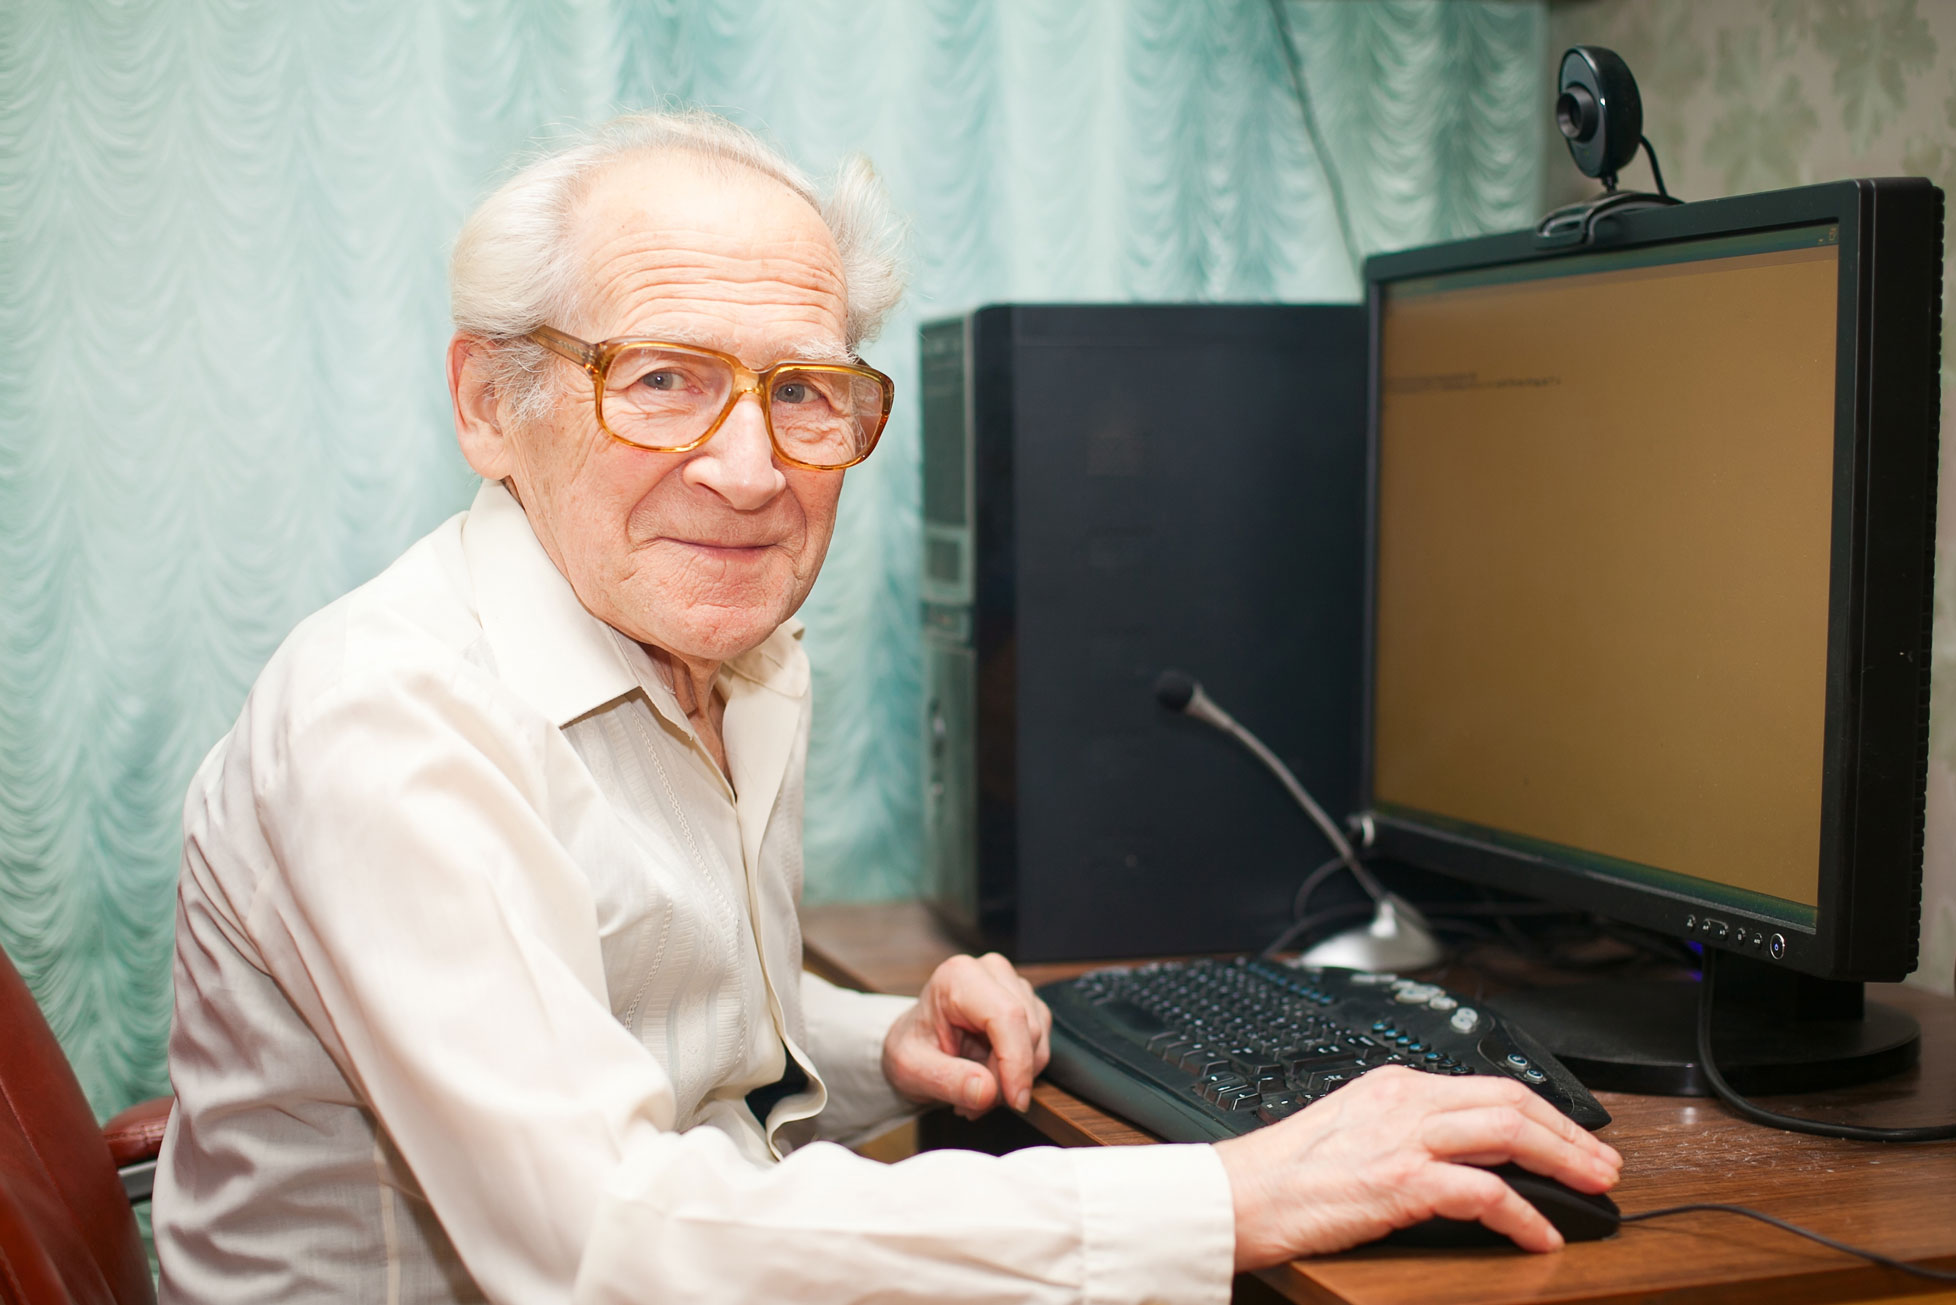 Older man at a computer